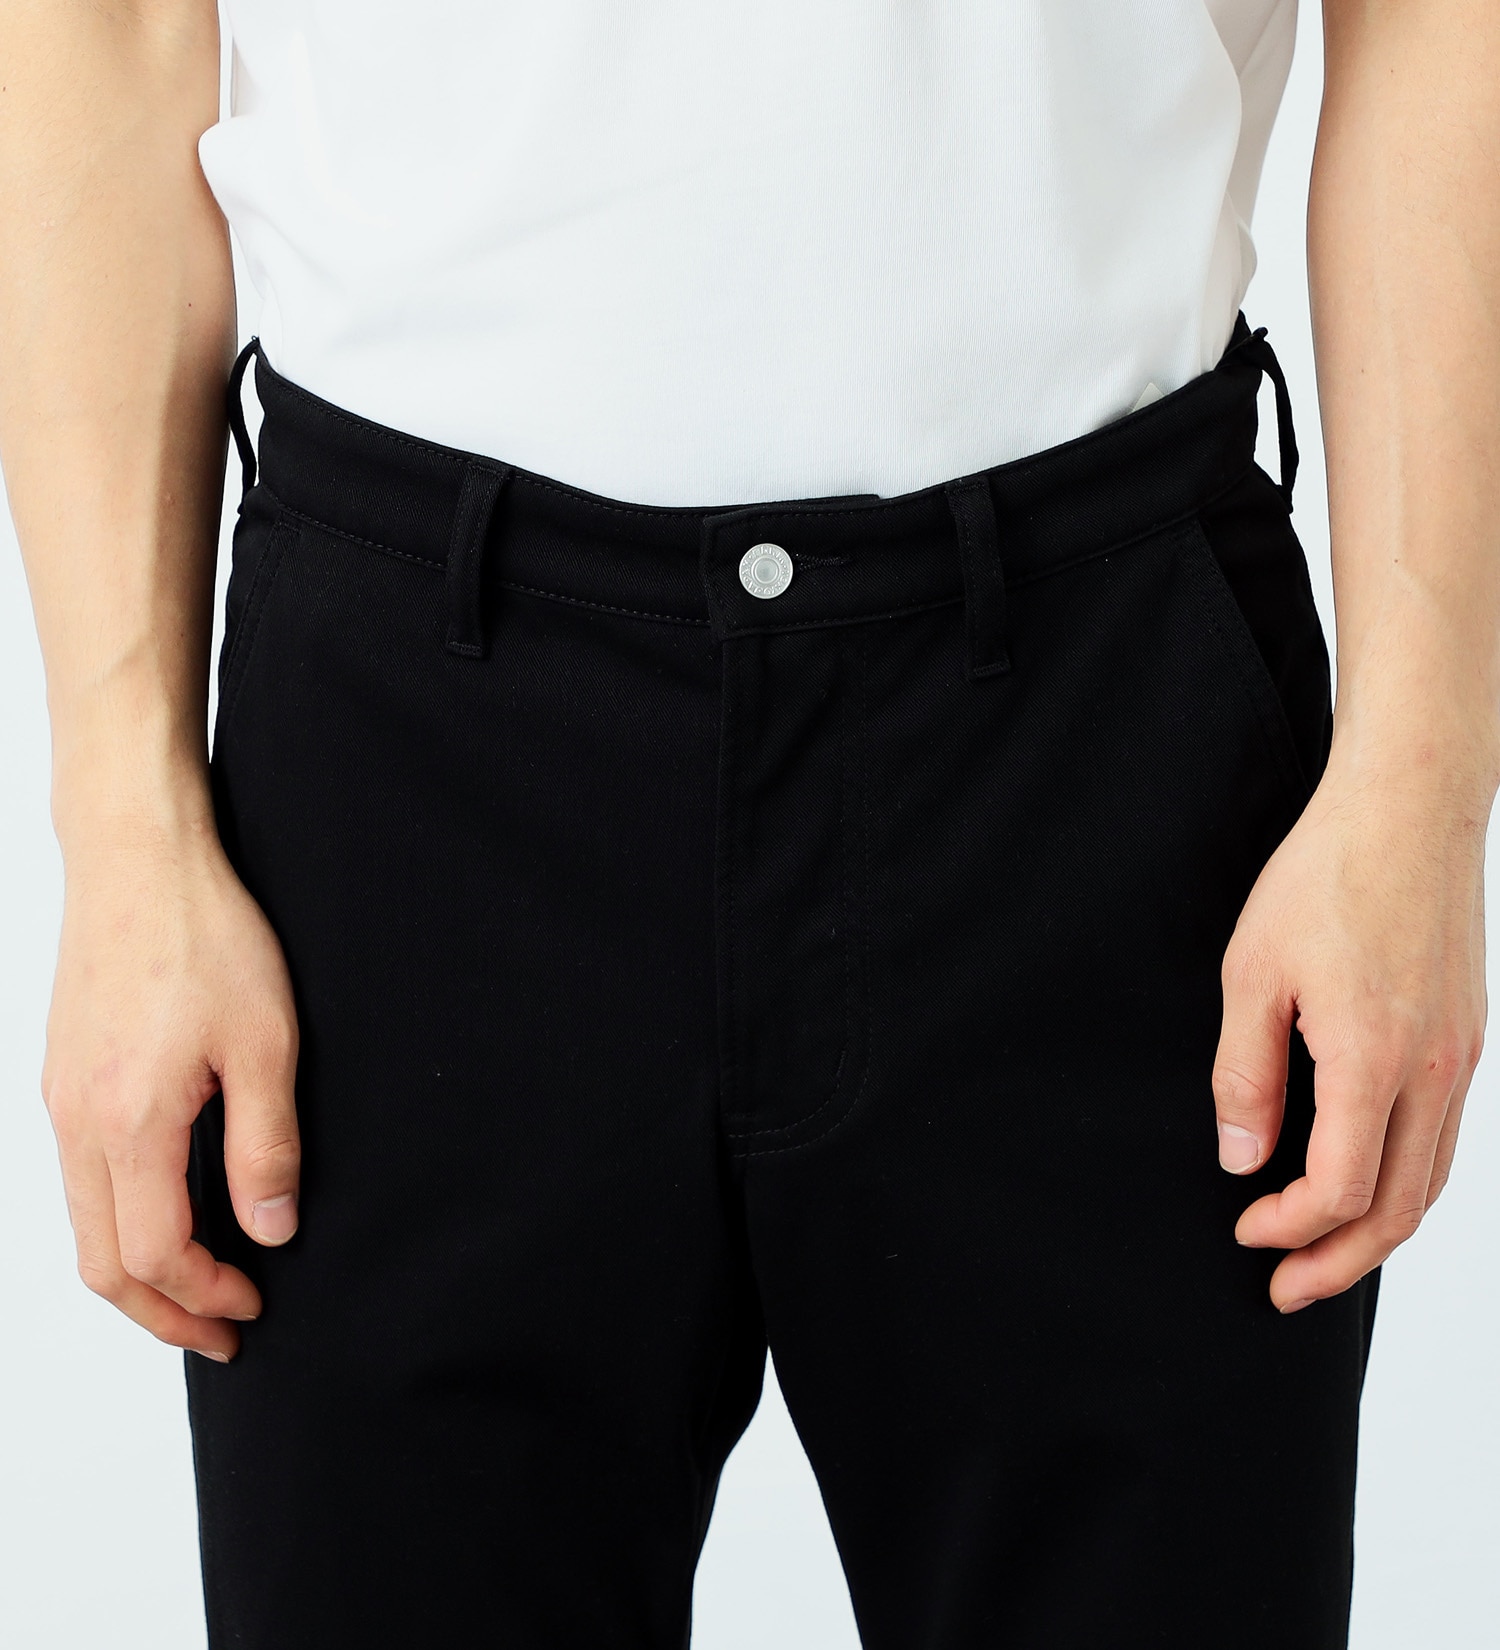 EDWIN(エドウイン)のタビデニ ストレートパンツ 軽量 撥水 ストレッチ 旅行用パンツ【メンズ】|パンツ/パンツ/メンズ|ブラック